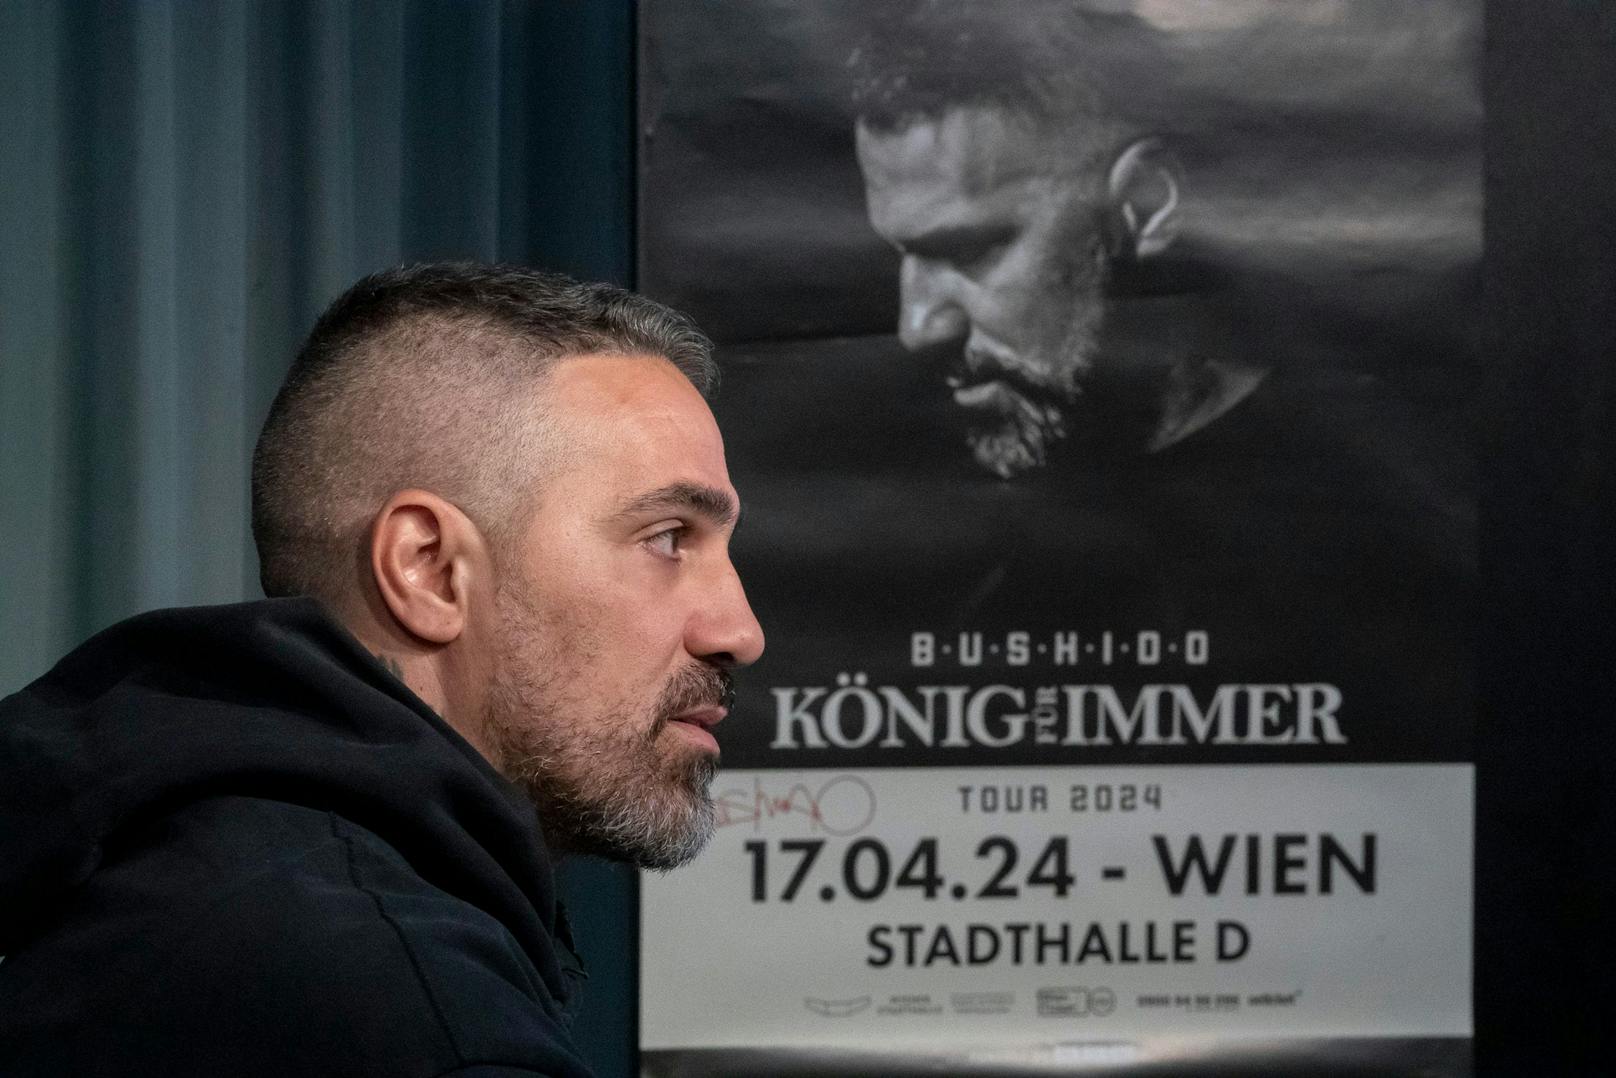 Die "König für immer"-Tour wird seine letzte sein. Am 17. April 2024 macht er einen Abstecher nach Wien.